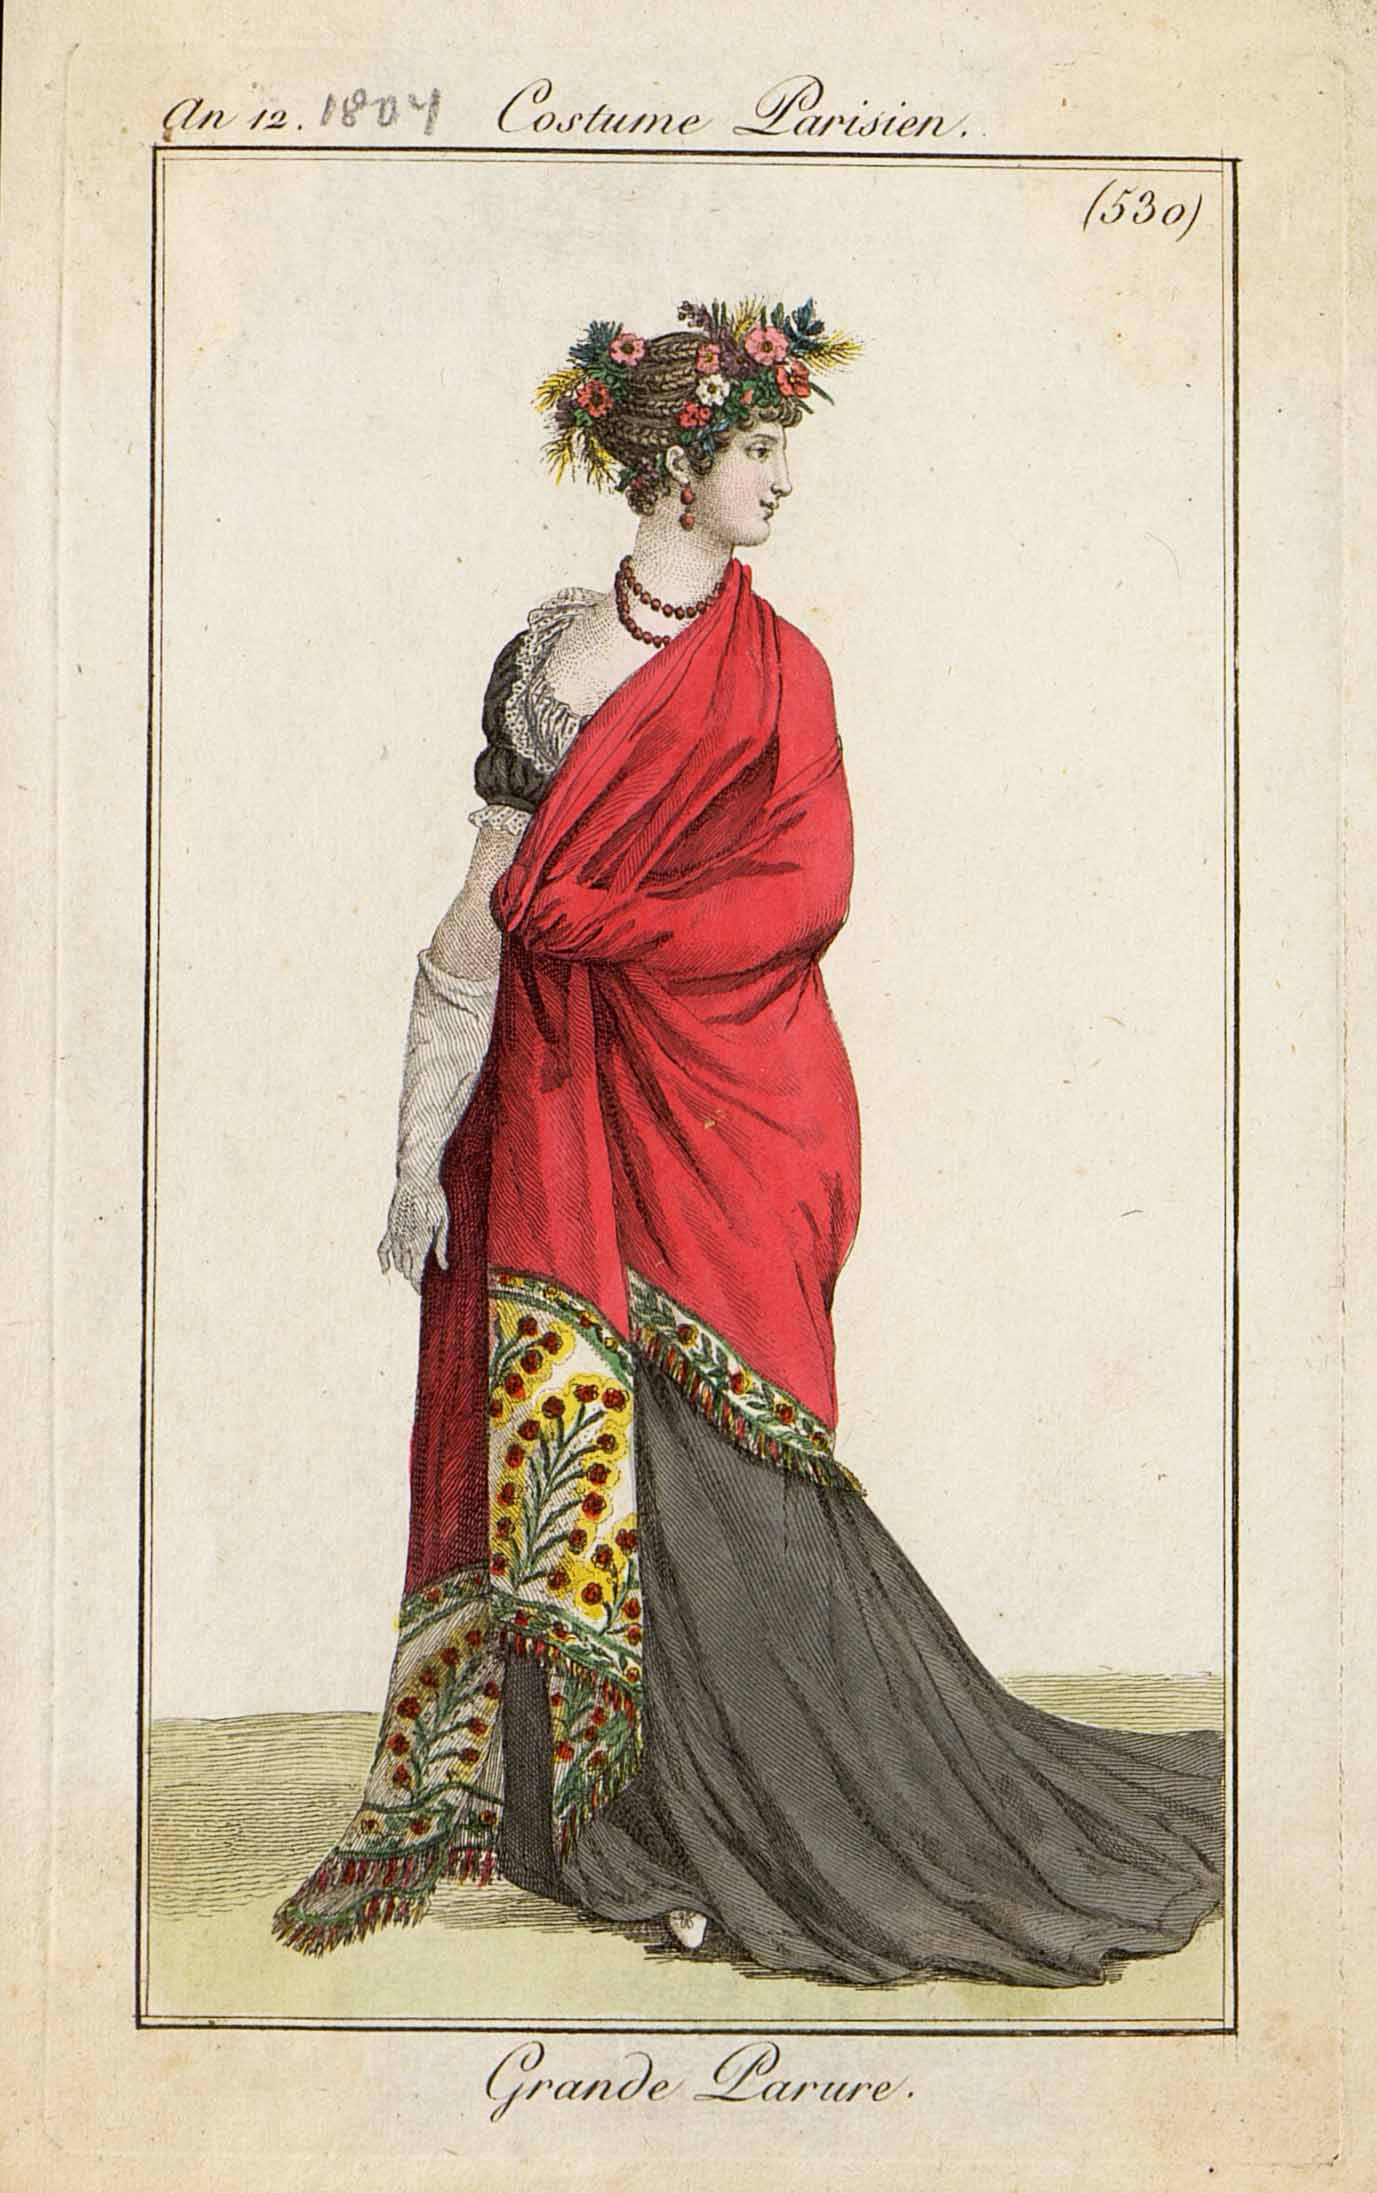 Модный дамский костюм. Лист из журнала «Costume Parisien». Франция, Париж.1804 г.